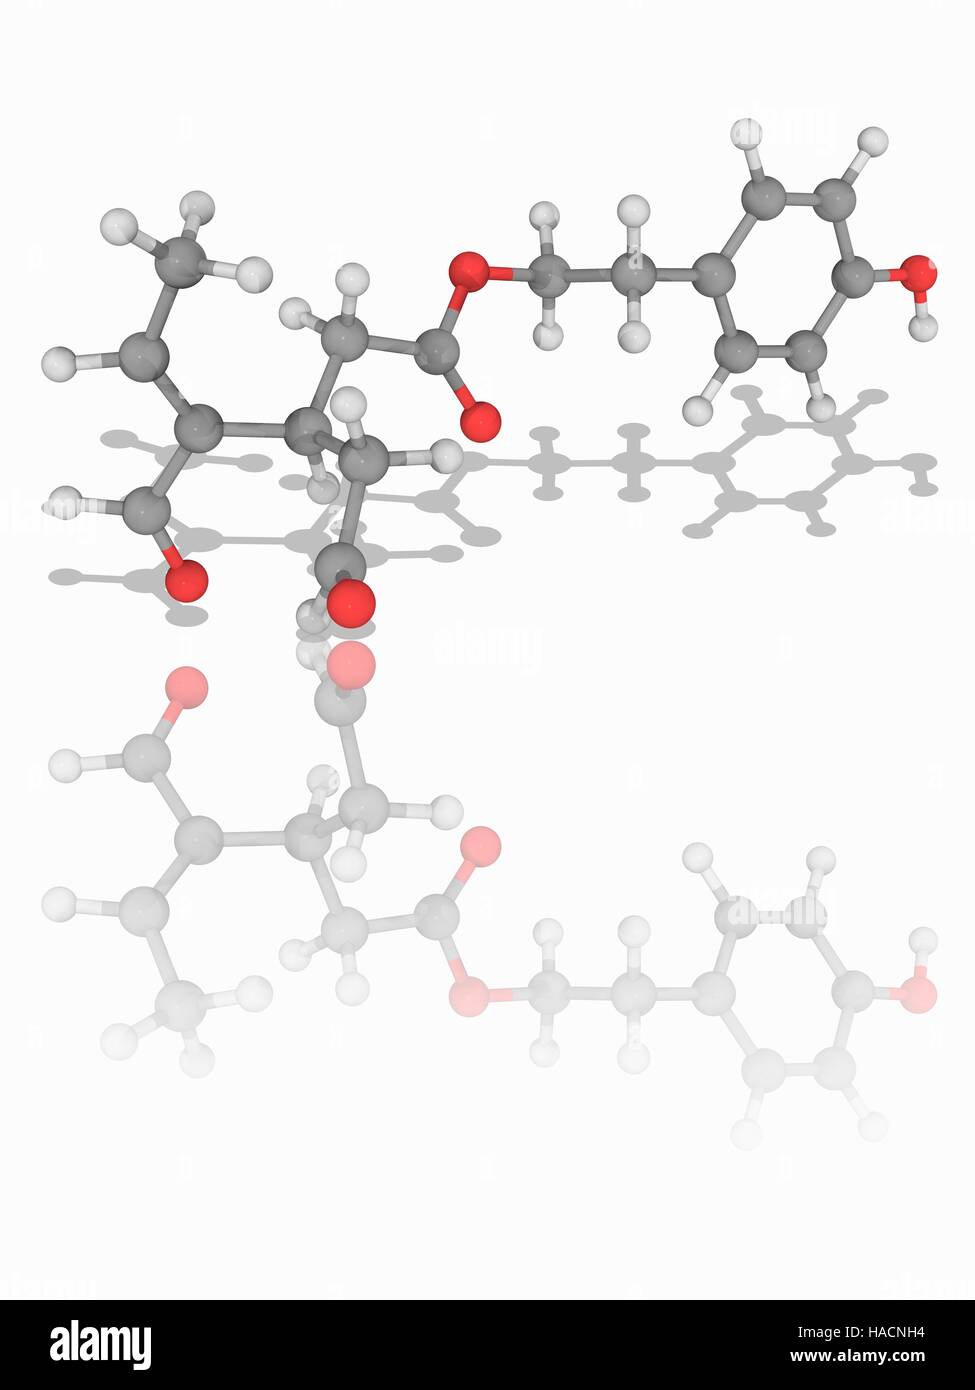 Oleocanthal. Le modèle moléculaire du composé organique naturel (oleocanthal C17.H20.O5), un phenylethanoid trouvés dans l'huile d'olive extra-vierge. Les atomes sont représentés comme des sphères et sont codés par couleur : carbone (gris), l'hydrogène (blanc) et d'oxygène (rouge). L'illustration. Banque D'Images